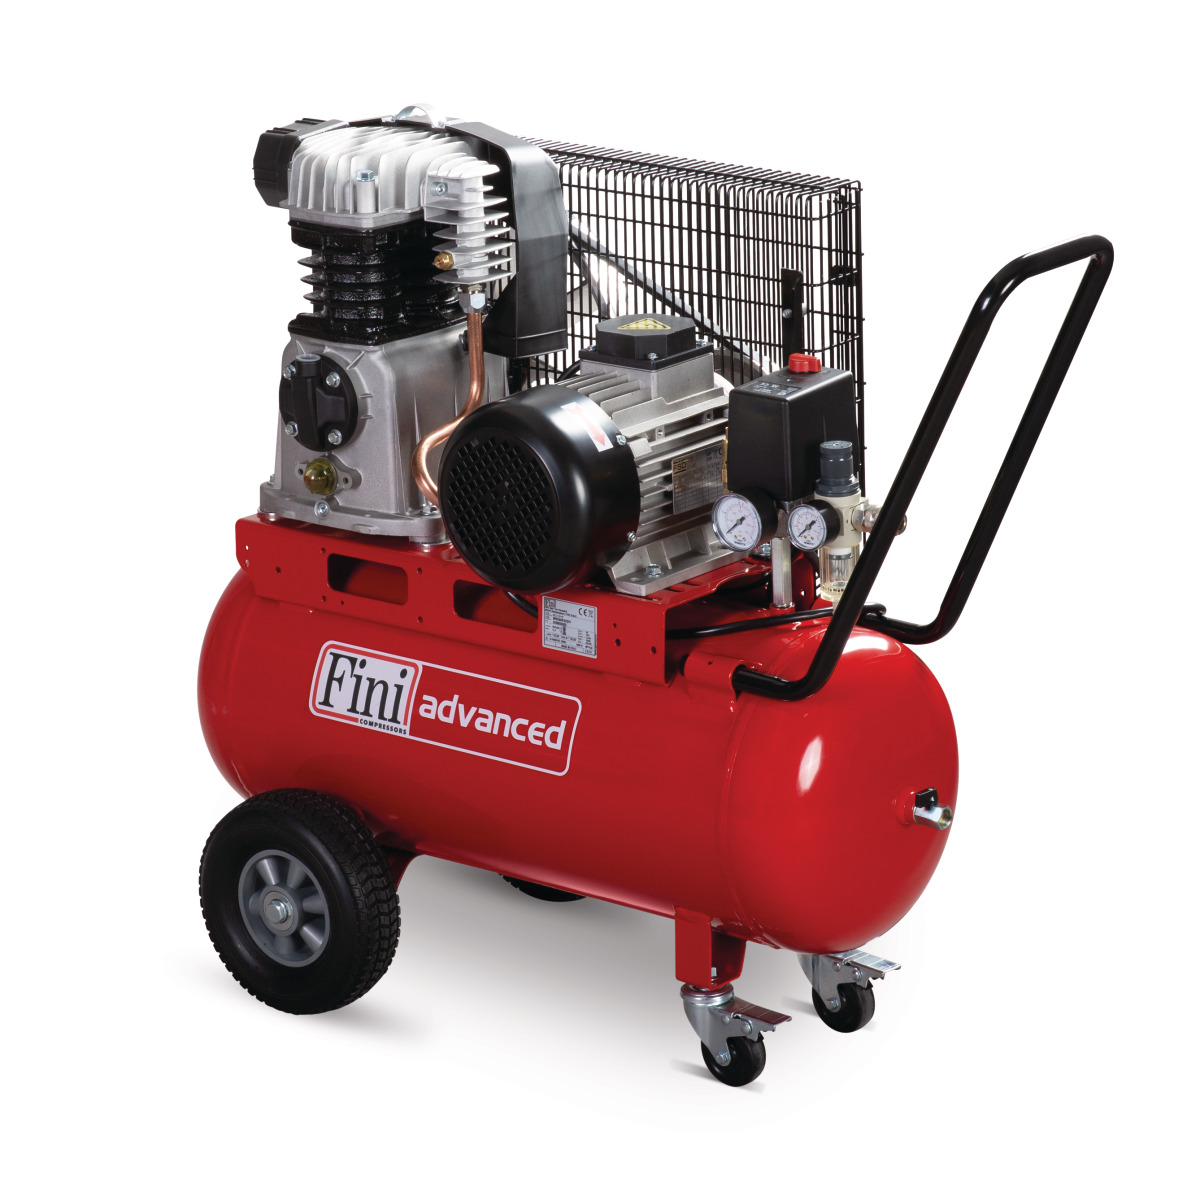 Fini Kolbenkompressor MK 113-50-4T, Liefermenge 400 L/min., Qualität Made in Italien